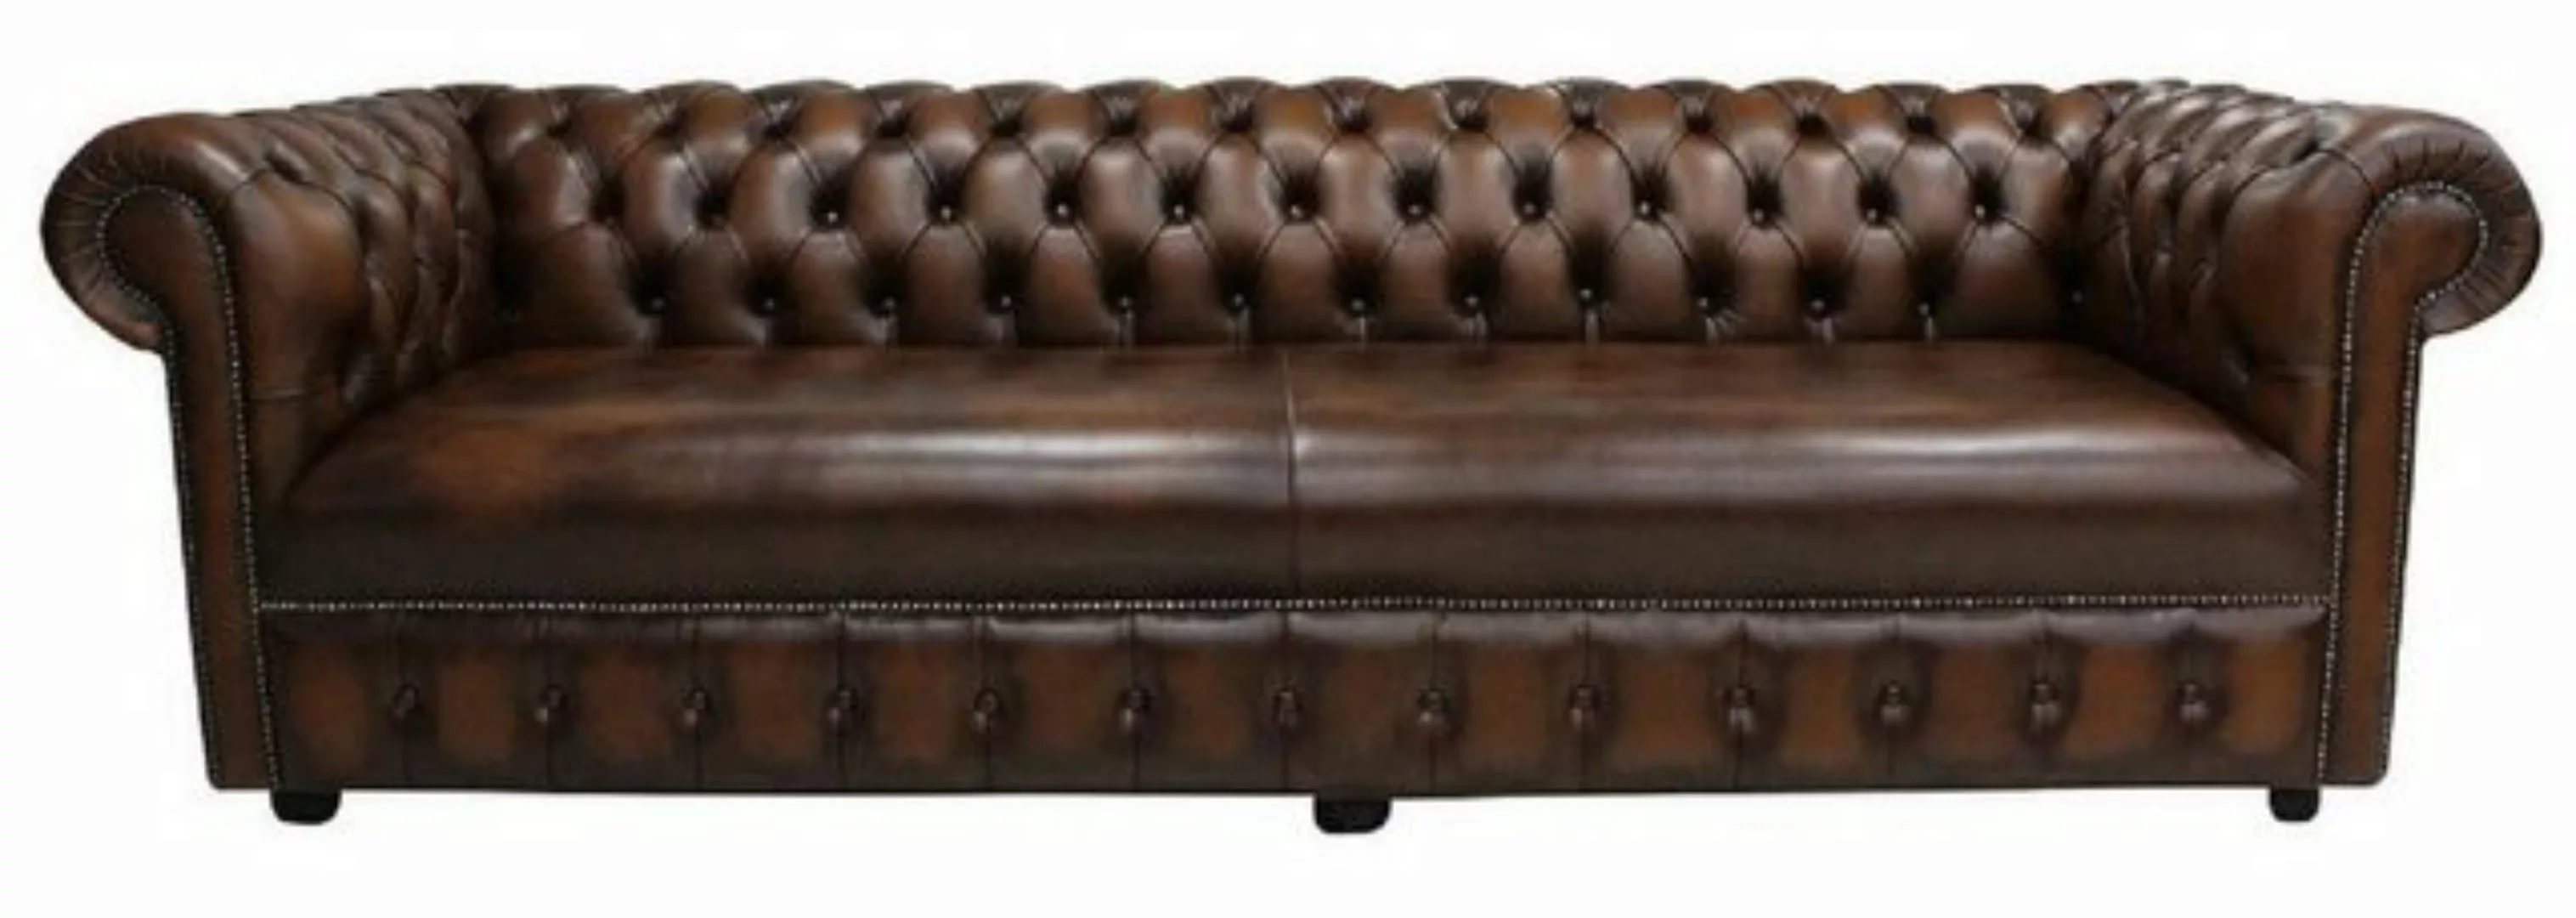 JVmoebel Sofa Chesterfield Design Luxus Polster Sofa Couch Leder Textil günstig online kaufen